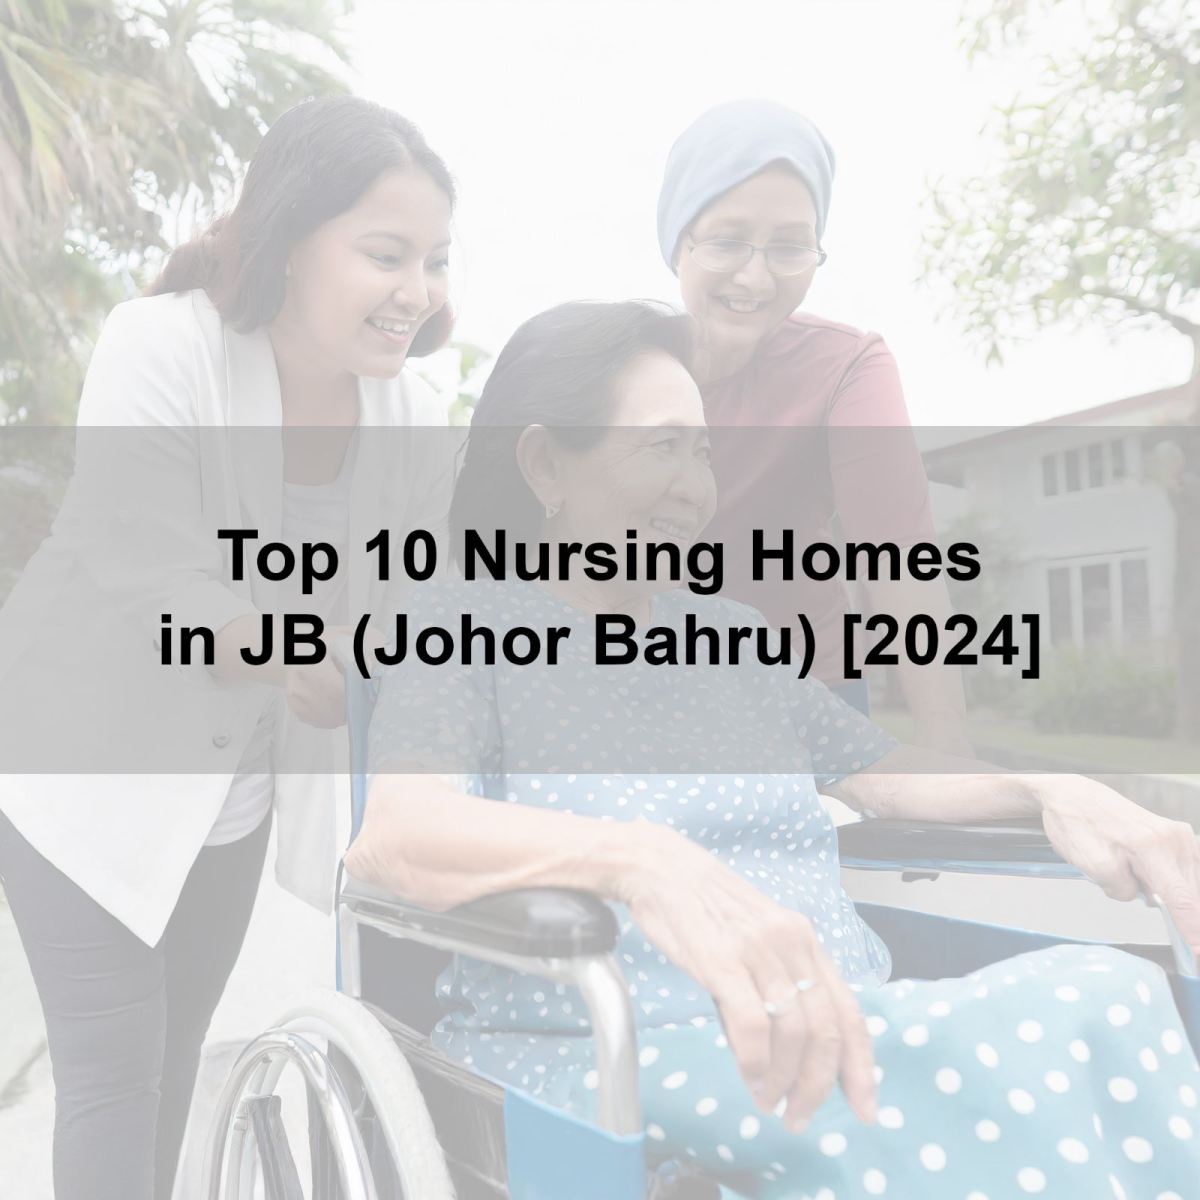 Top 10 Nursing Homes in JB (Johor Bahru) [2024]